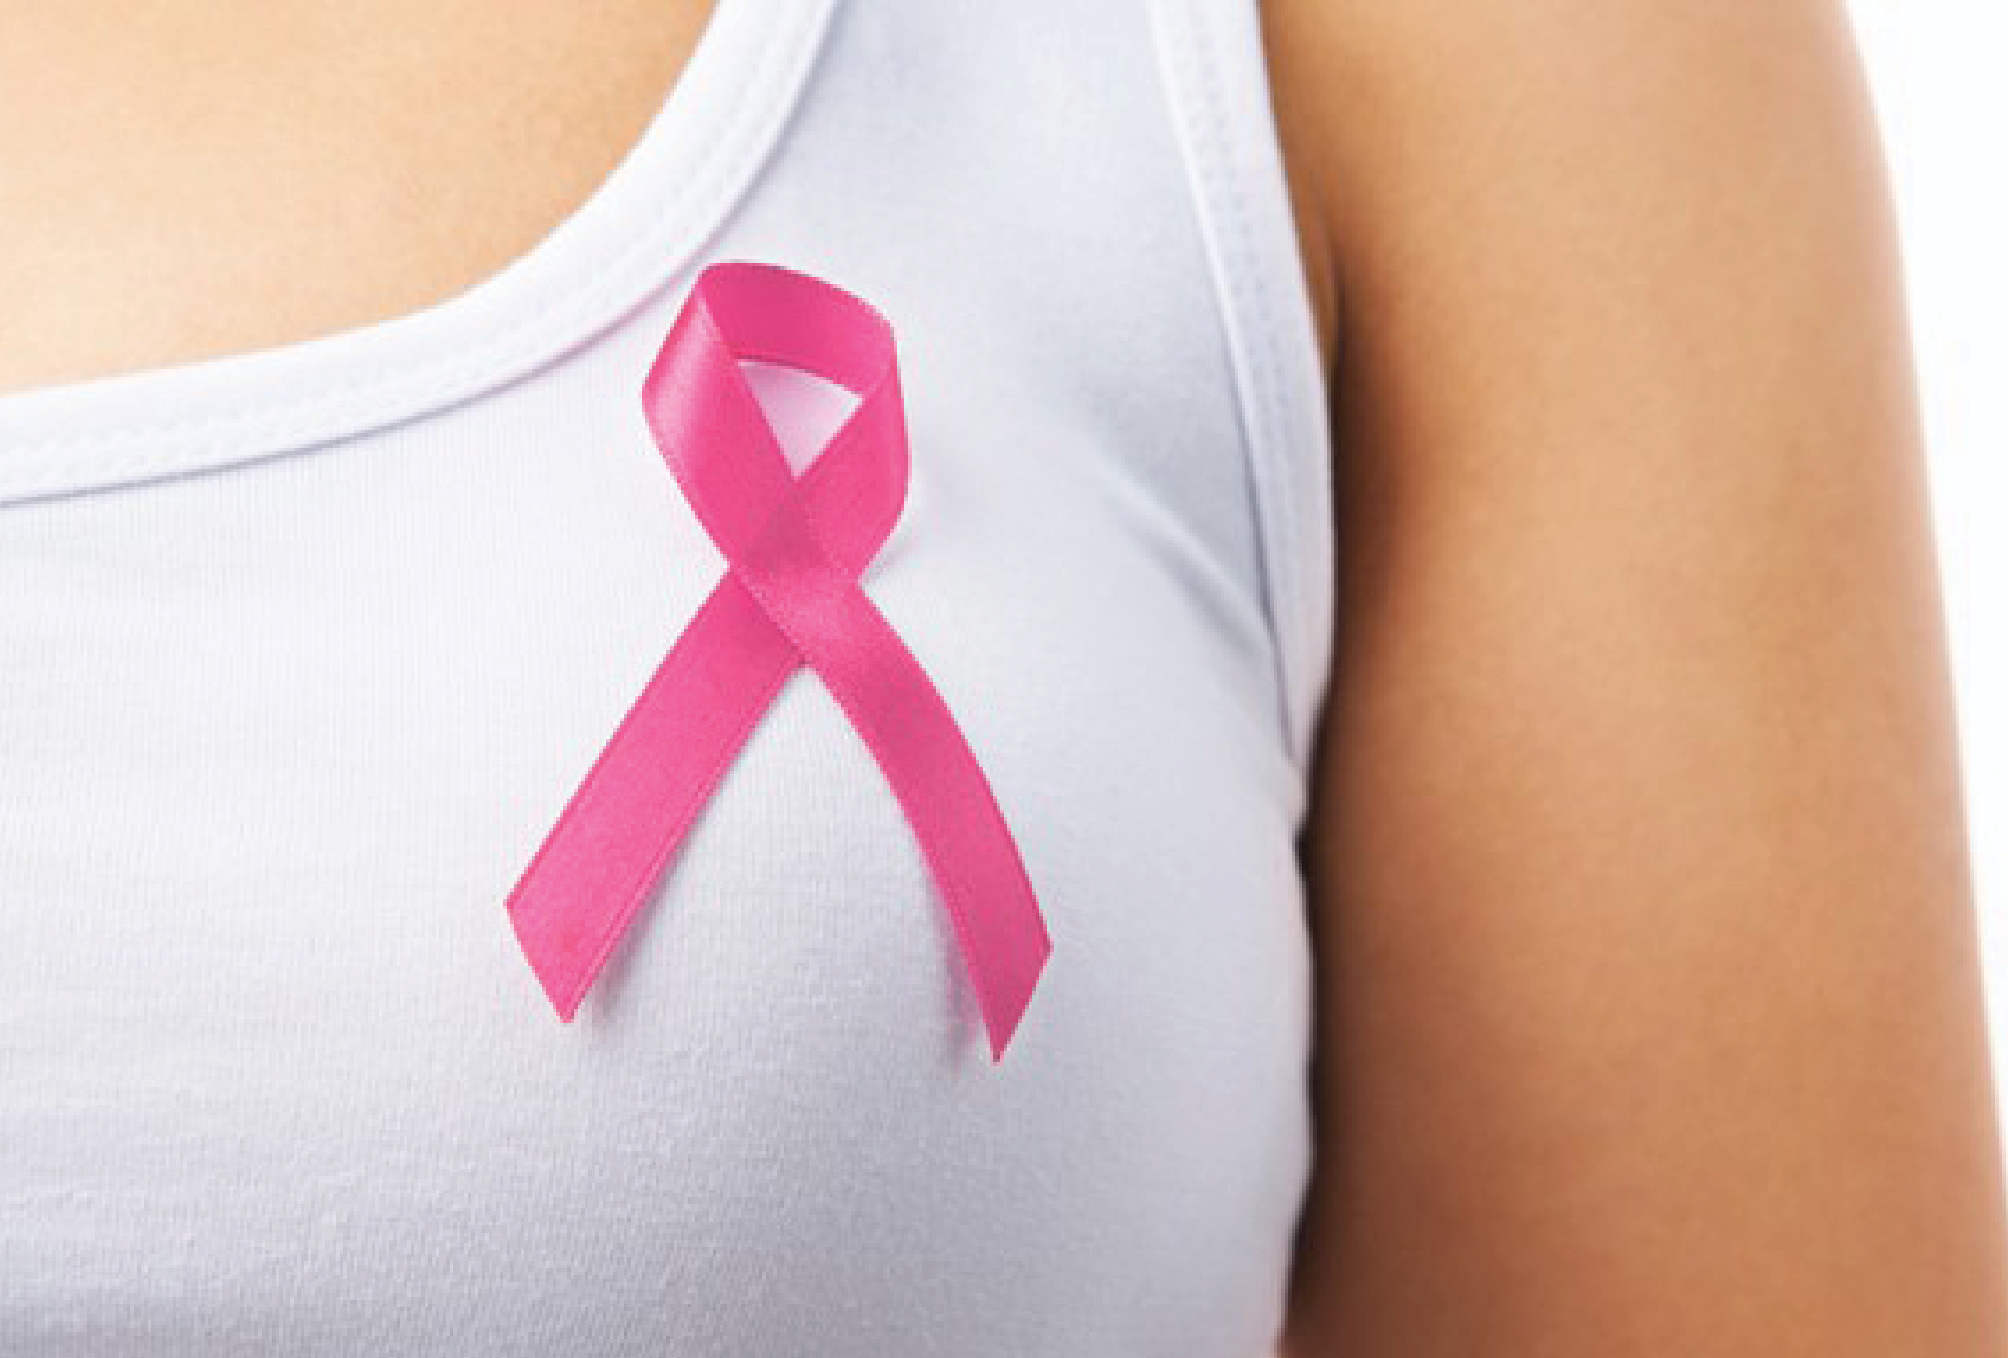 Piemonte, lotta al tumore al seno e alle dipendenze